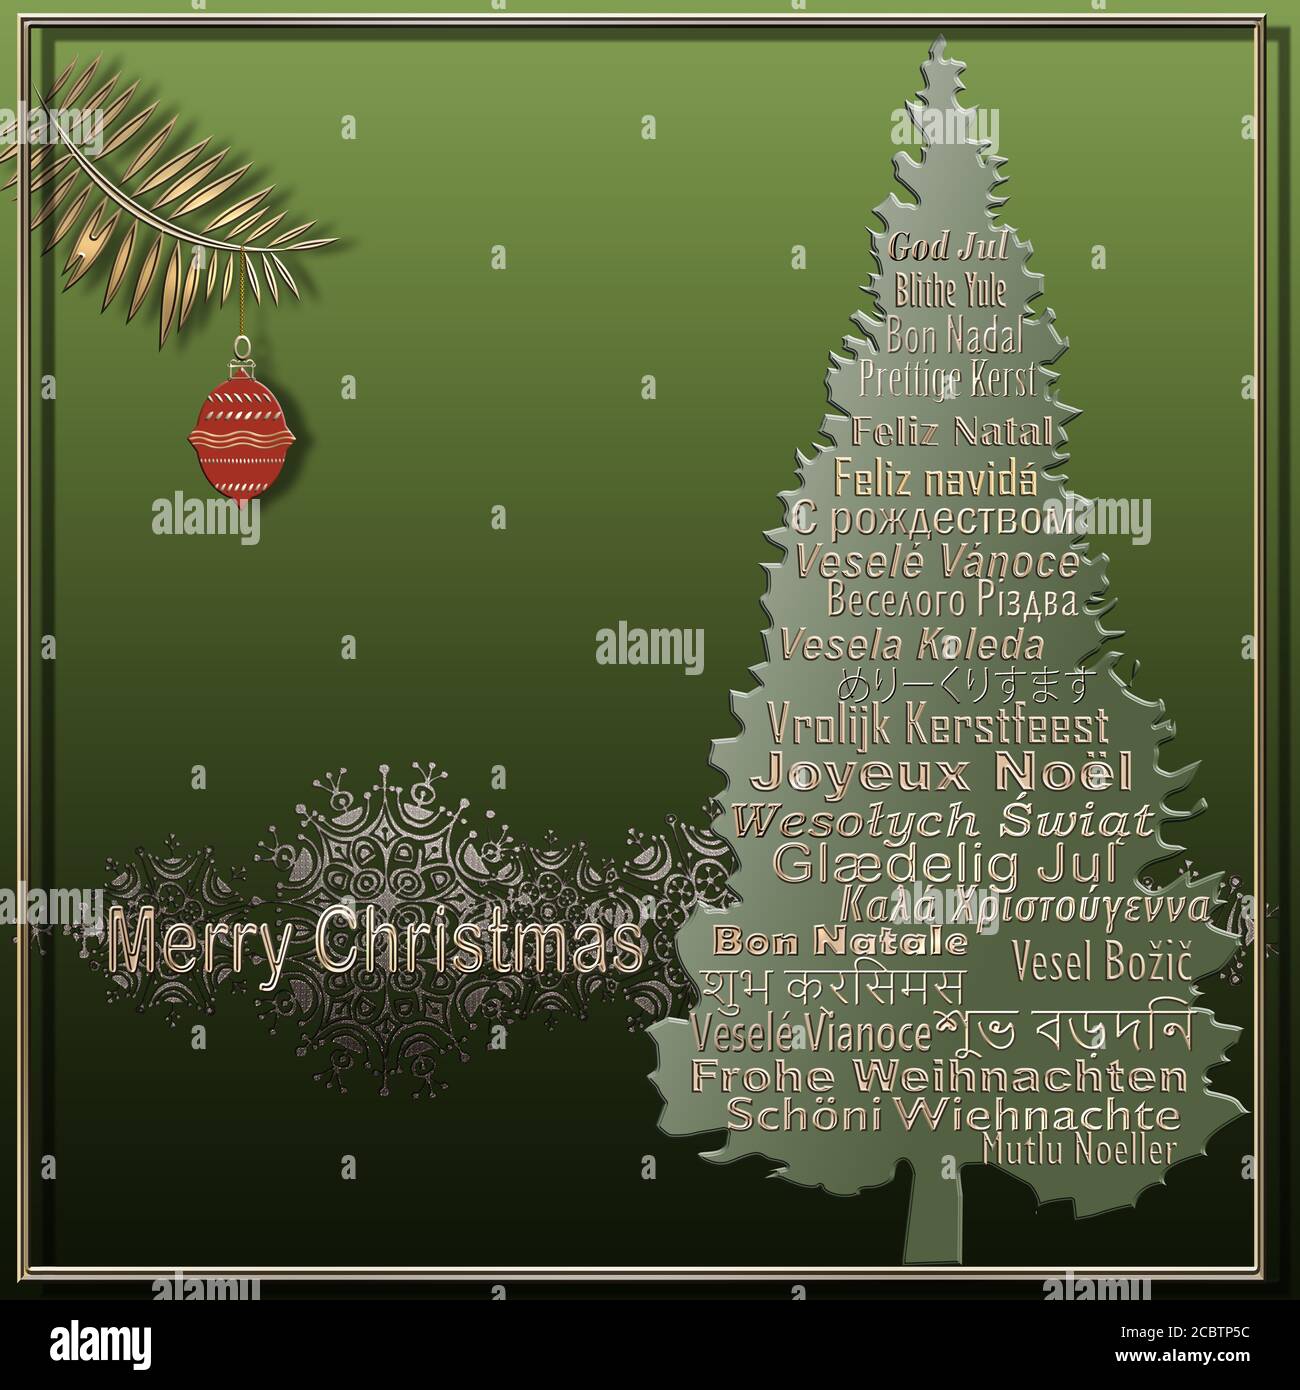 Buon Natale In 5 Lingue.Lingua Bengalese Immagini E Fotos Stock Alamy